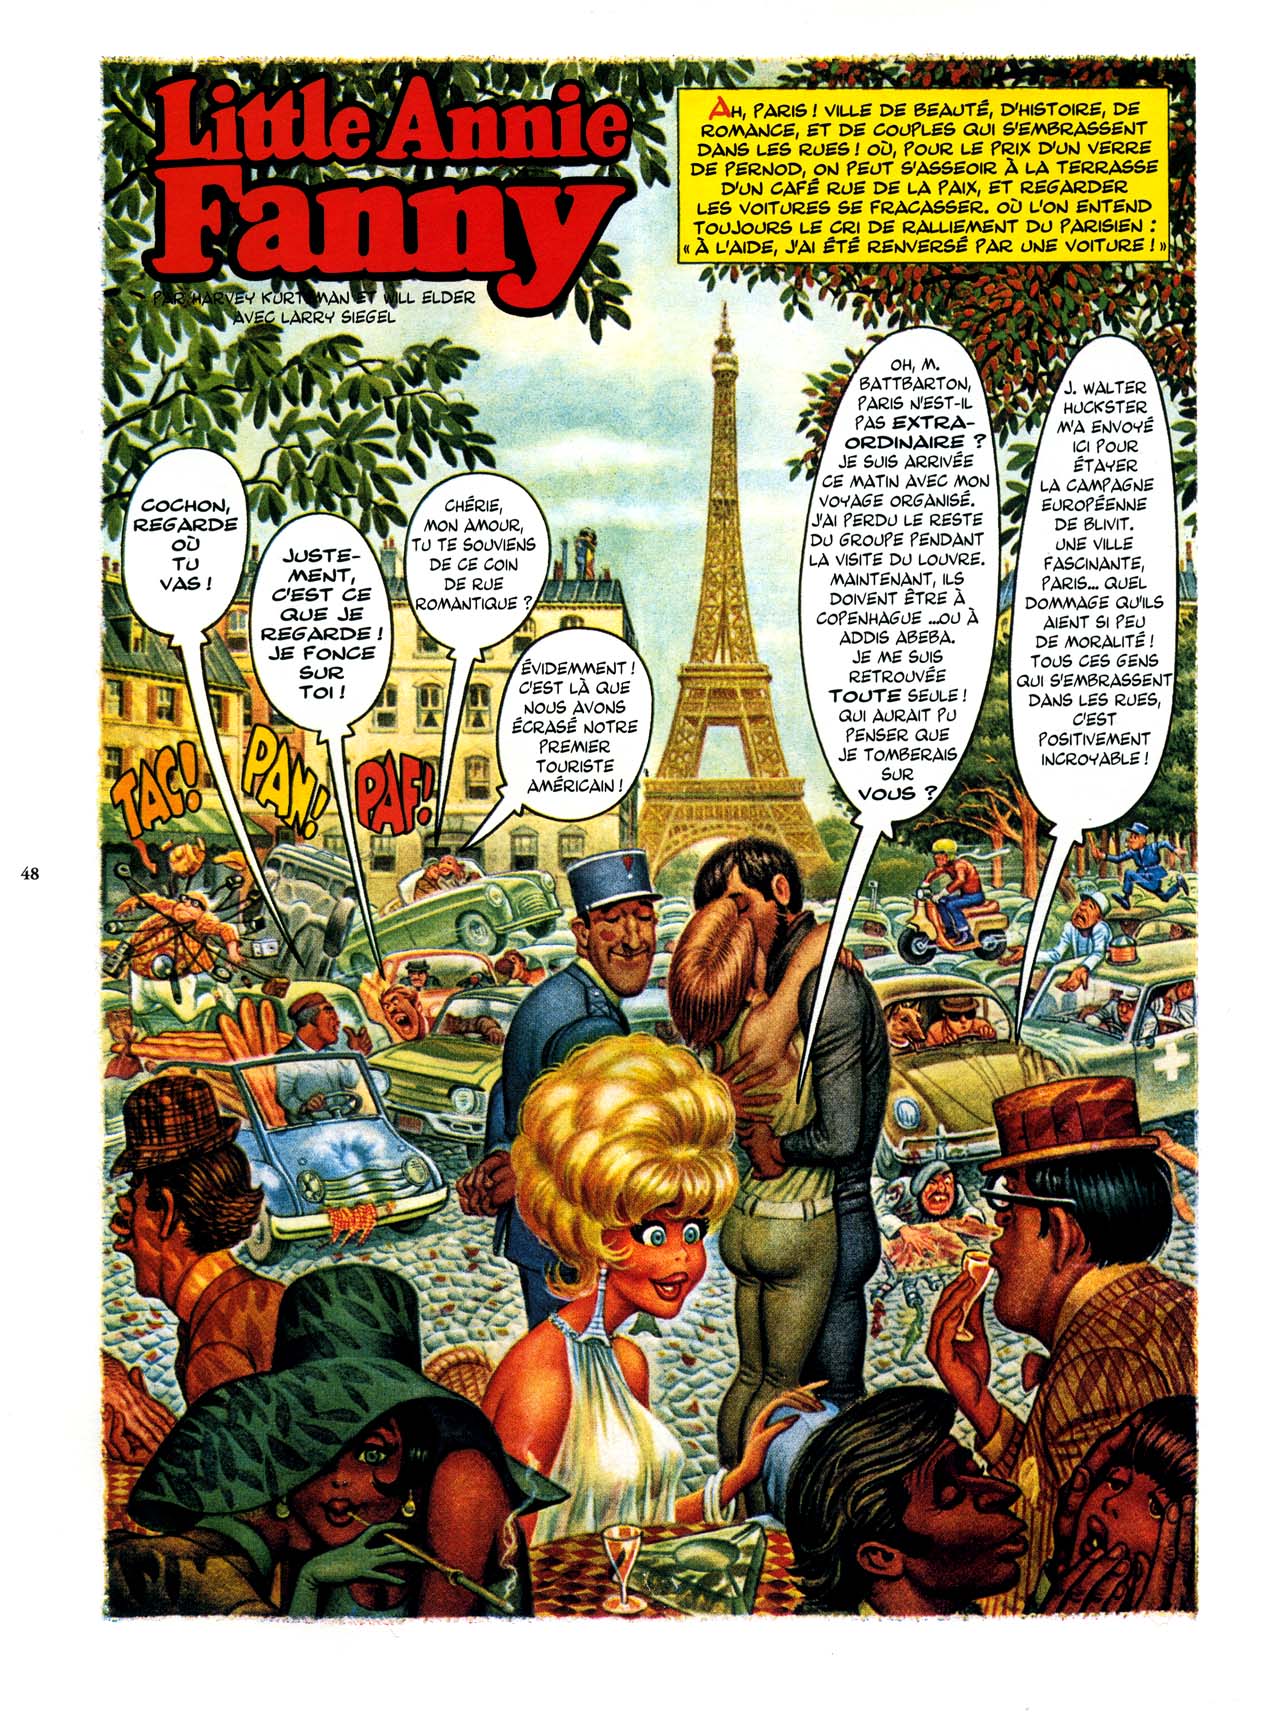 Playboys Little Annie Fanny Vol. 2 - 1965-1970 numero d'image 48